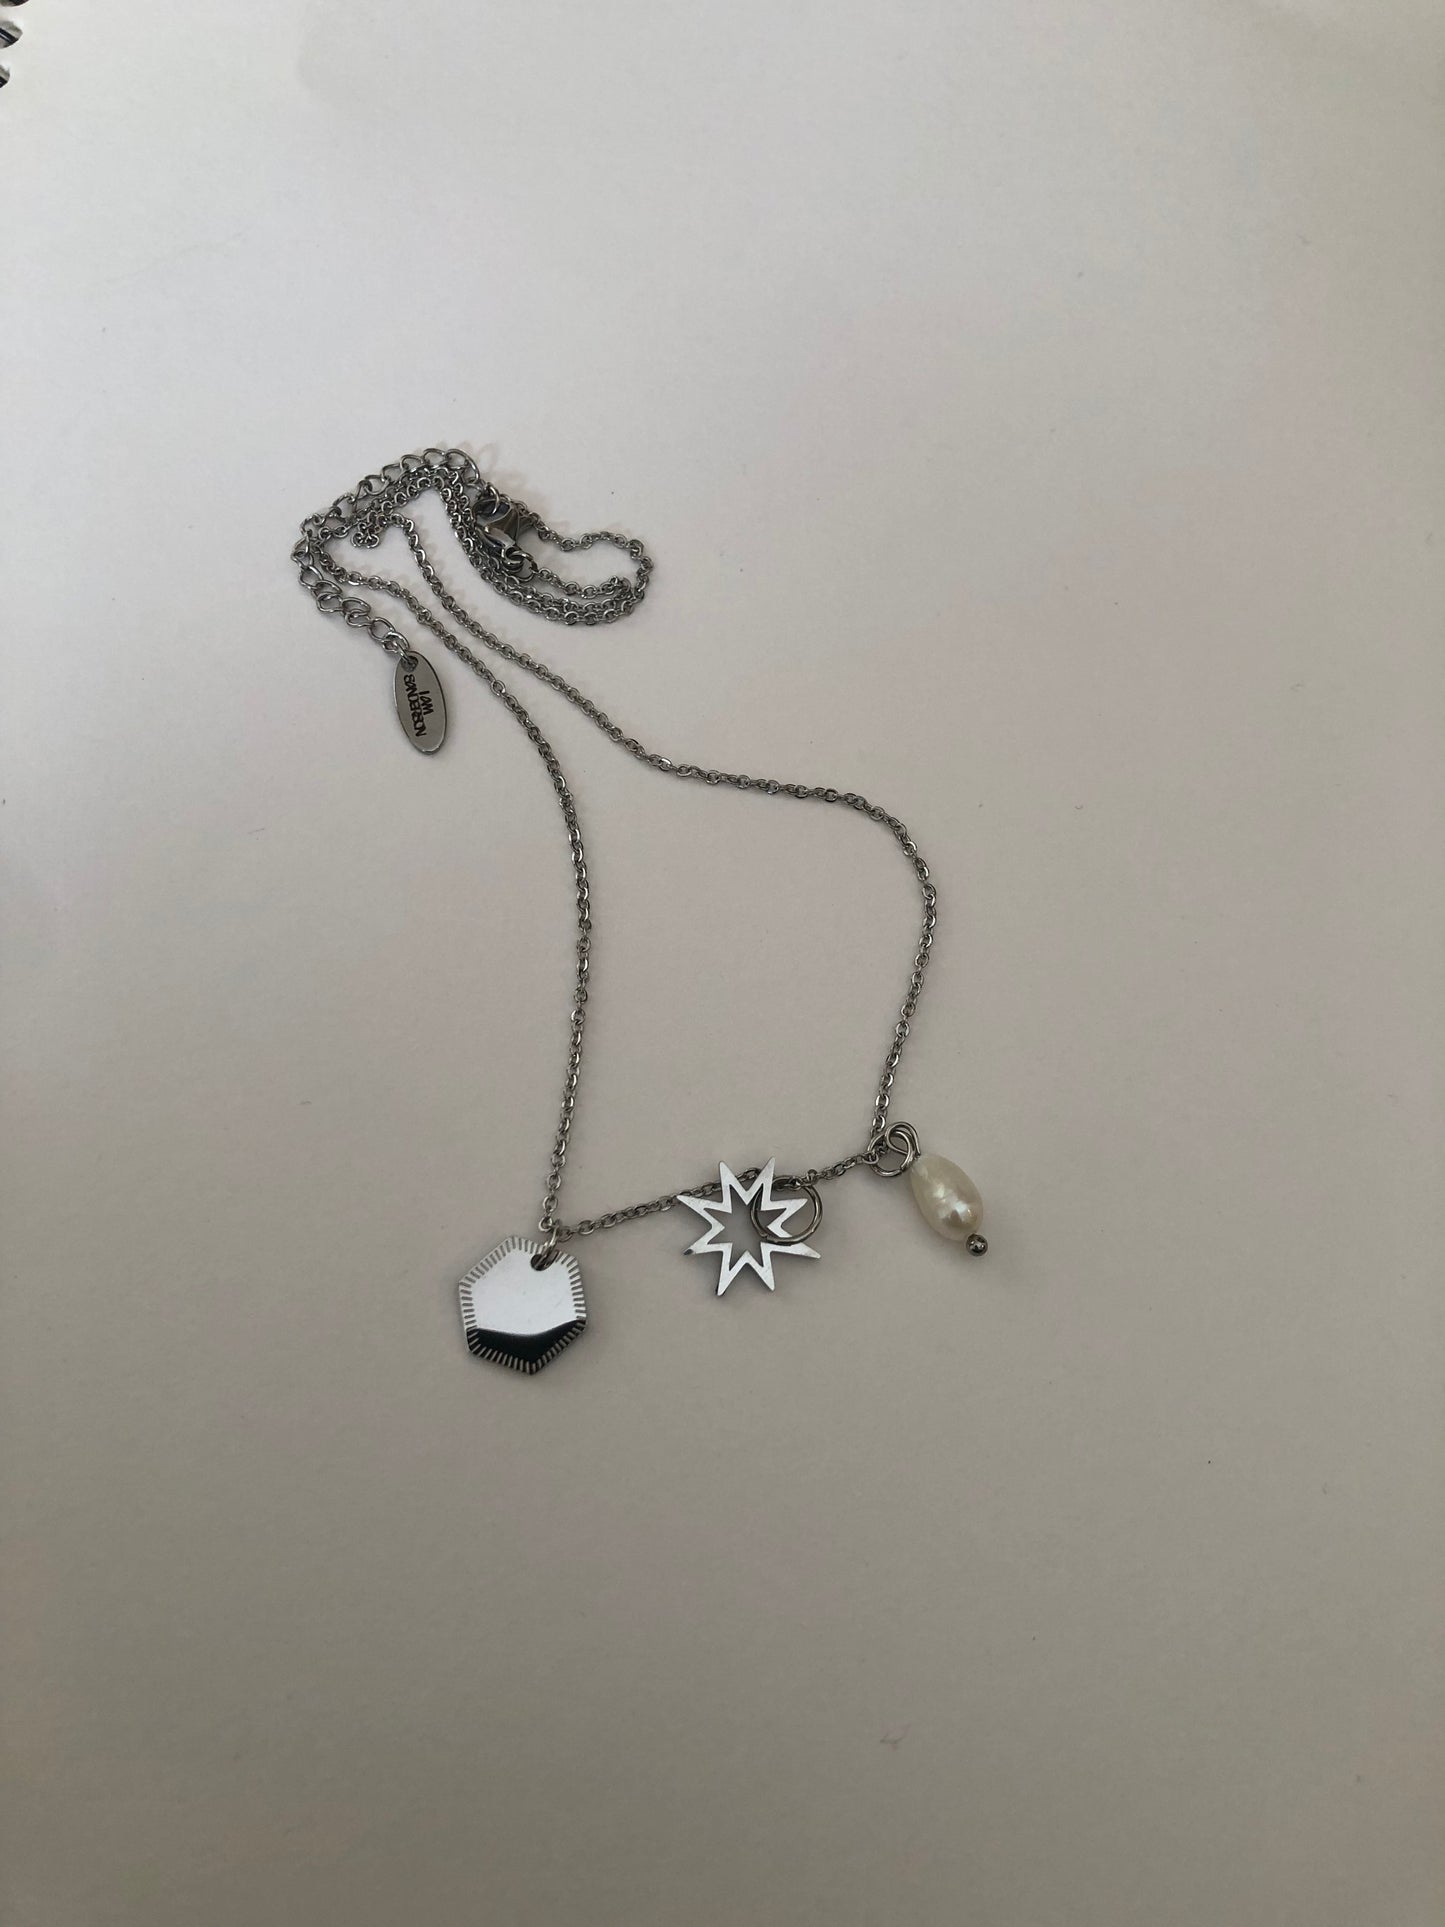 Sienna necklace